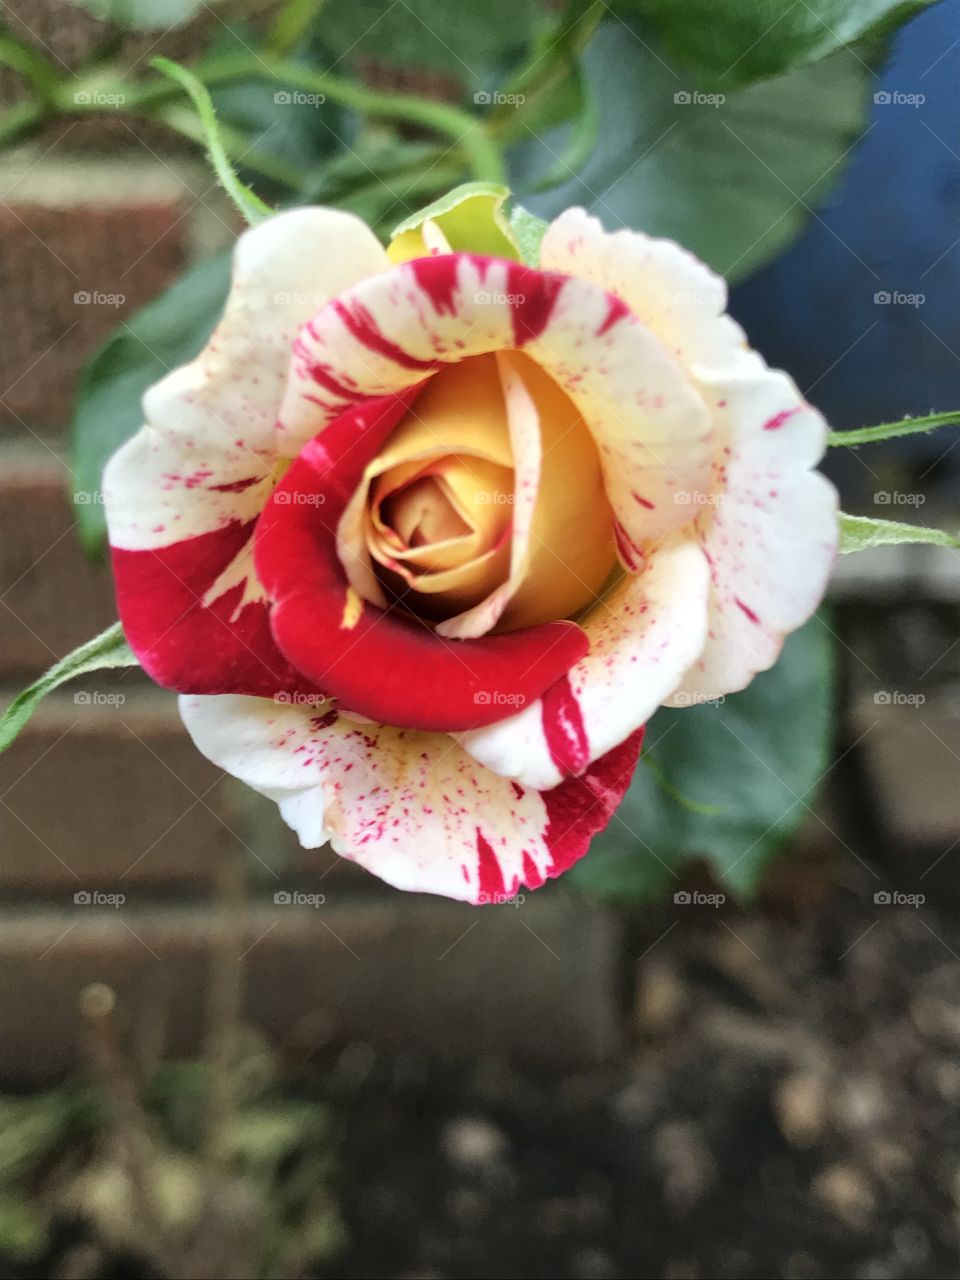 Spider rose in bloom